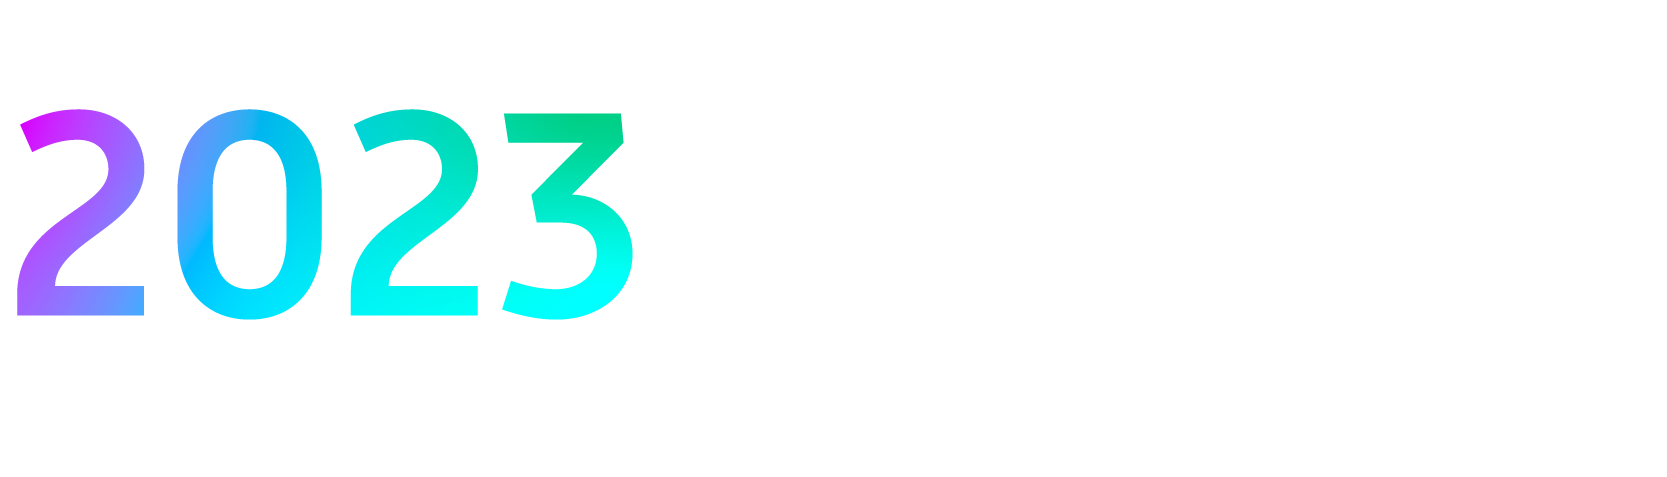 iss-stewardship-briefing-logo-2023-2